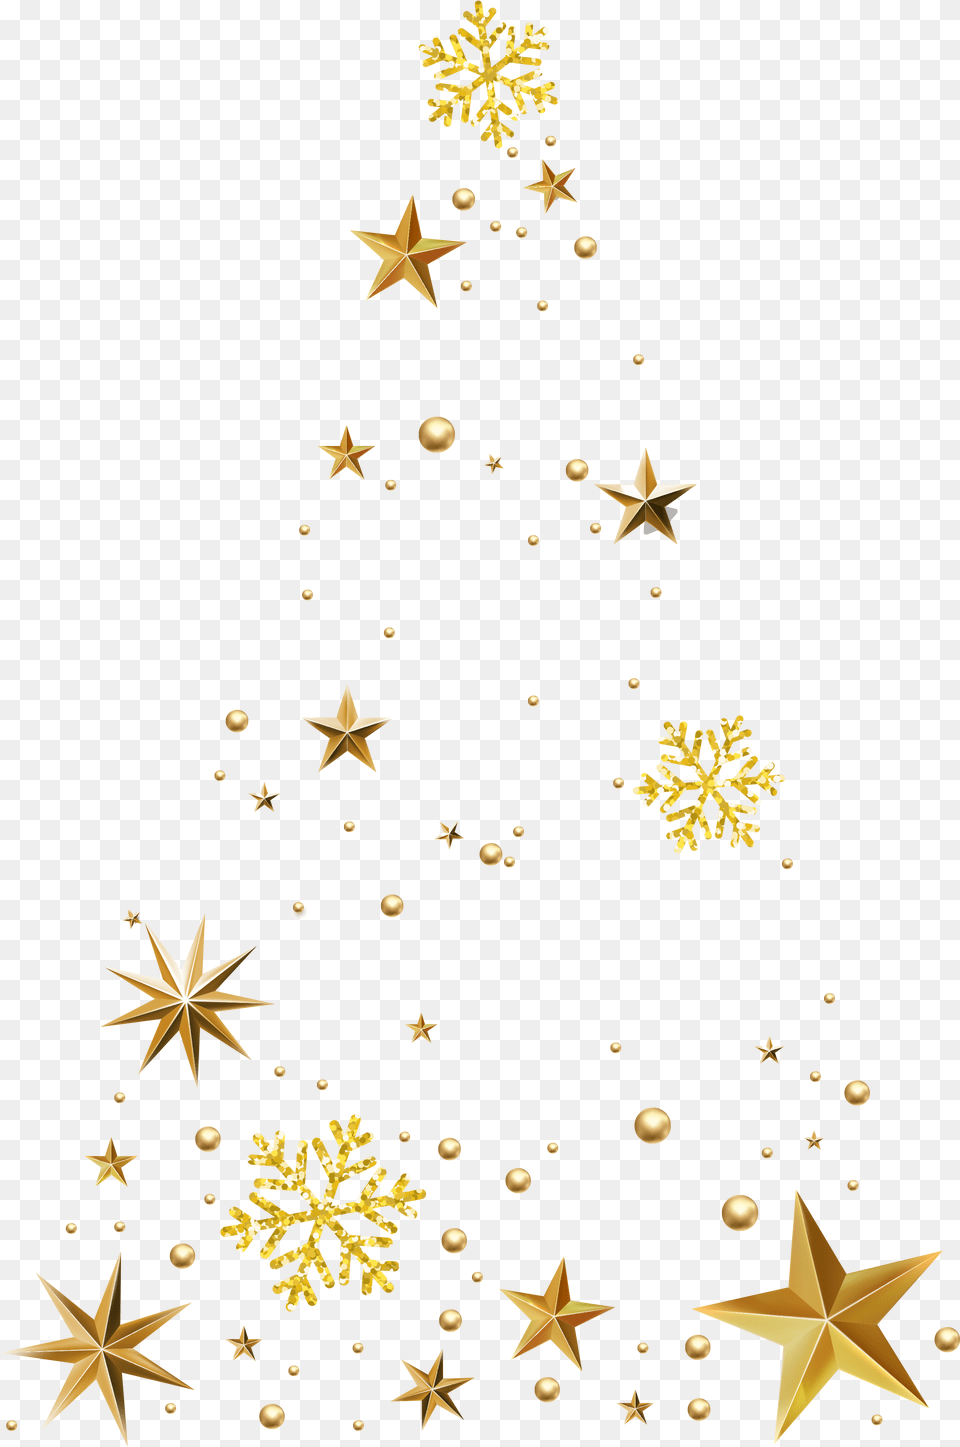 Este Grficos Es Las Estrellas Doradas Decoran El Estrella Doradas Transparente, Star Symbol, Symbol, Lighting, Christmas Free Png